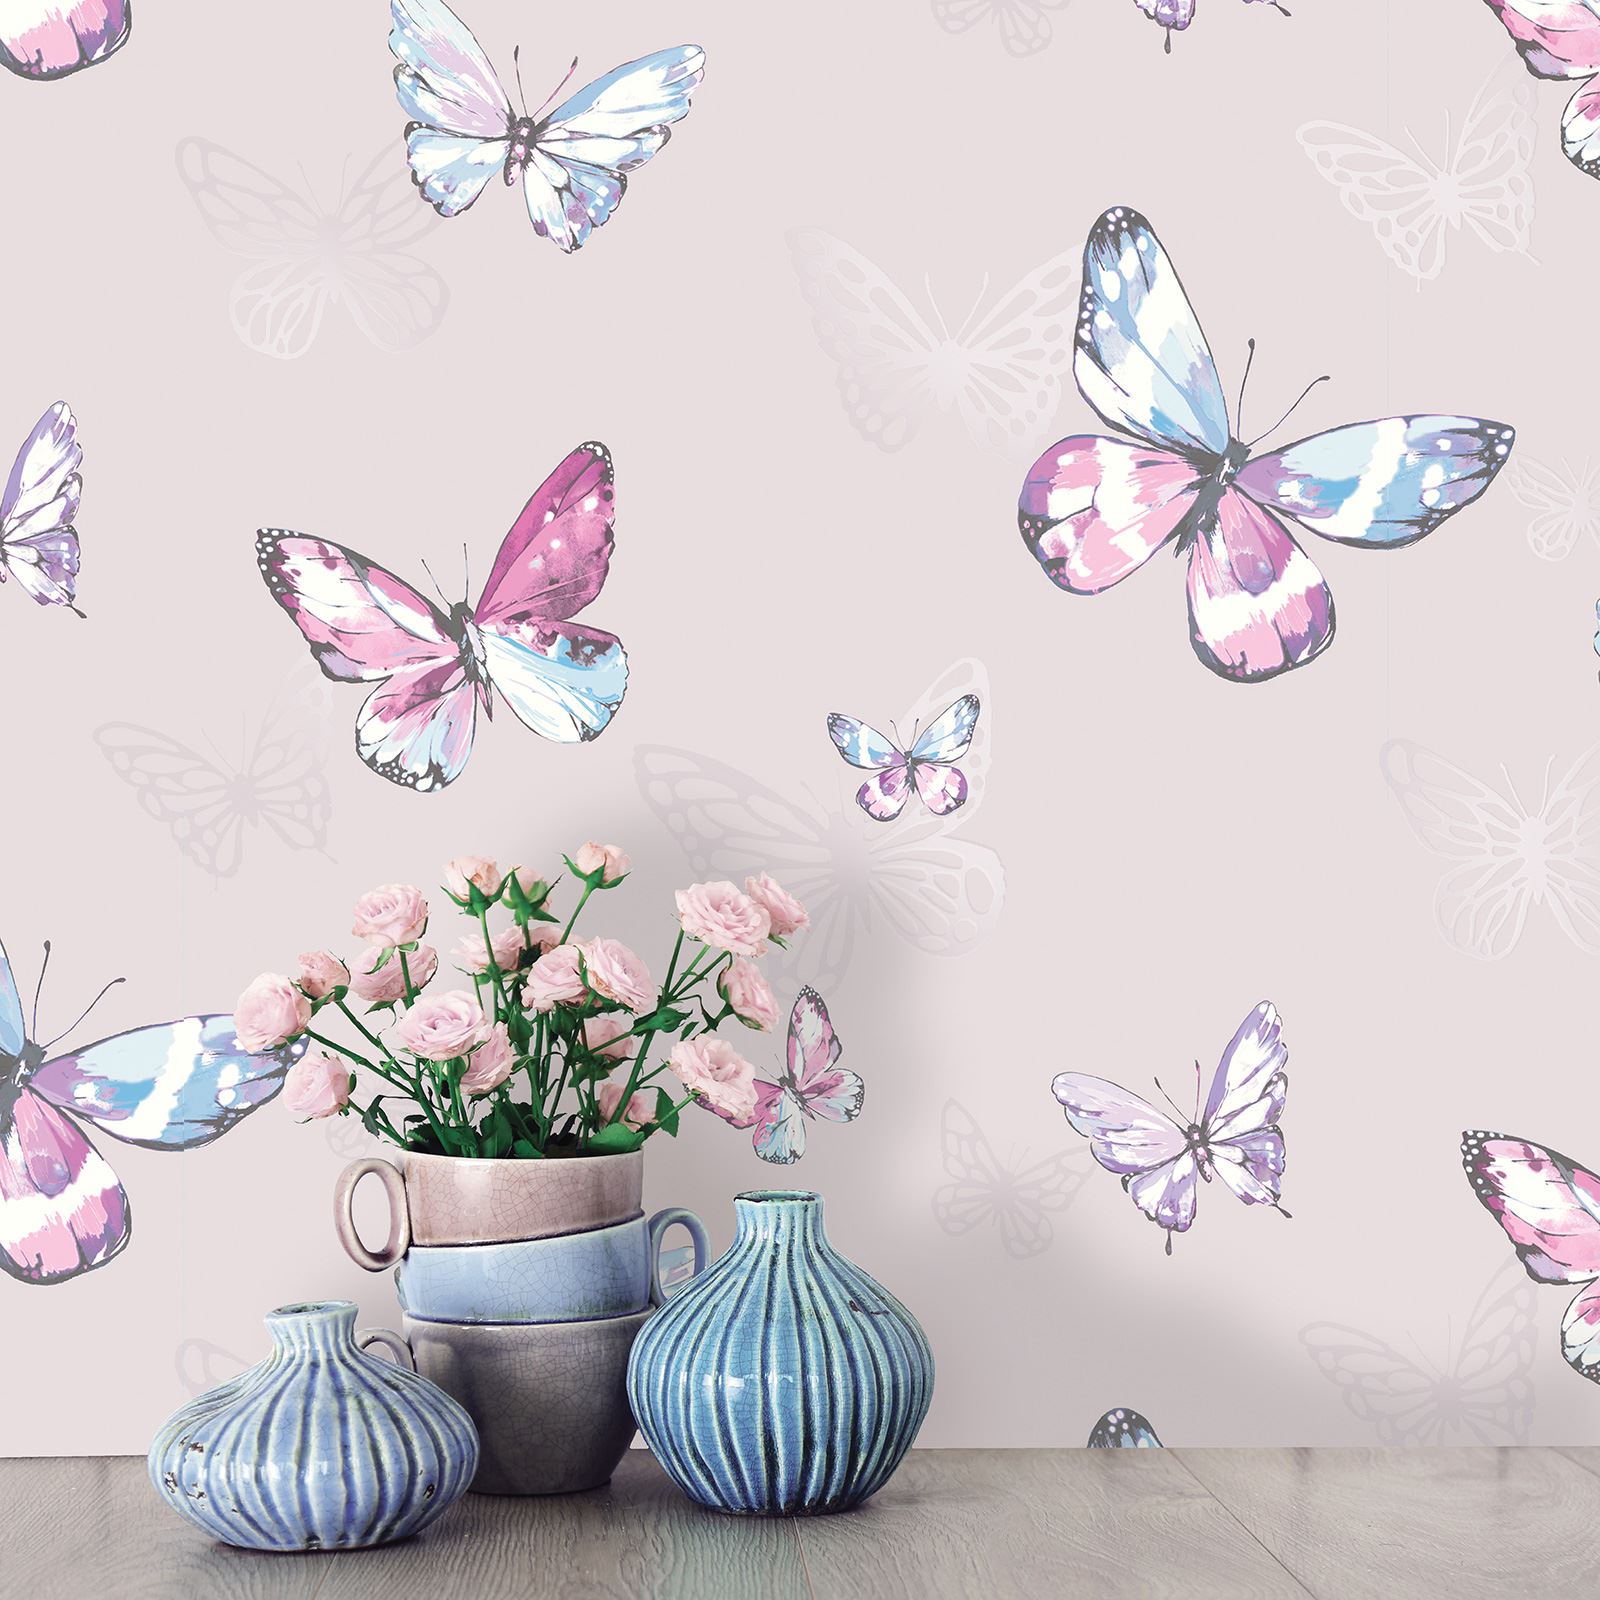 寝室の蝶の壁紙,バタフライ,蛾と蝶,昆虫,壁紙,ピンク